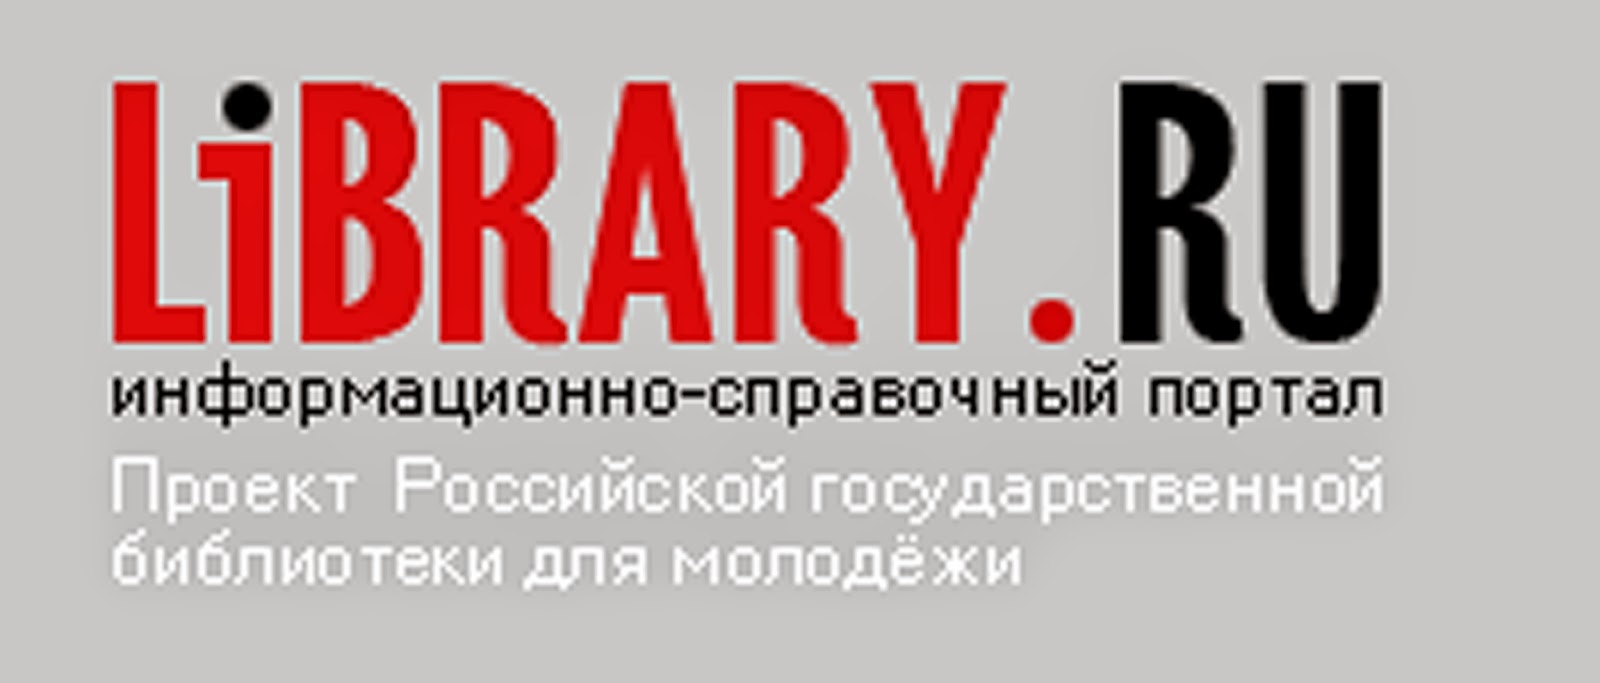 Лайбрери ру электронная. Library.ru. Svitk ru библиотека. Library.ru информационно справочный портал. Библиотека ру.